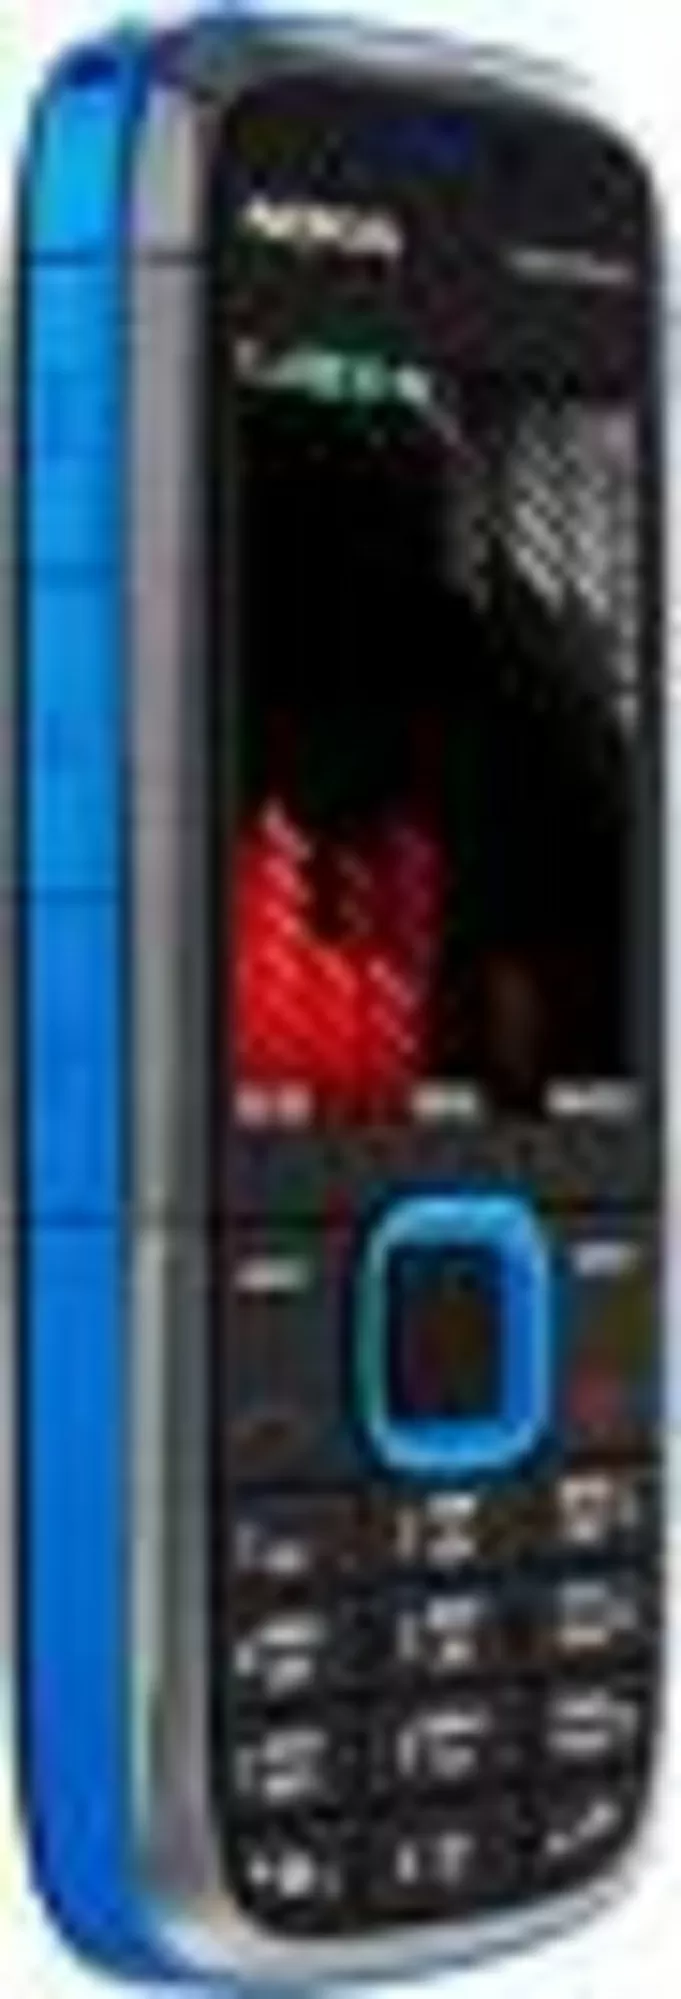 Телефоны в могилеве цена. Nokia 5130 XPRESSMUSIC. Nokia 5130 Blue. Синяя нокиа 5130. Nokia 5130 XPRESSMUSIC Black.